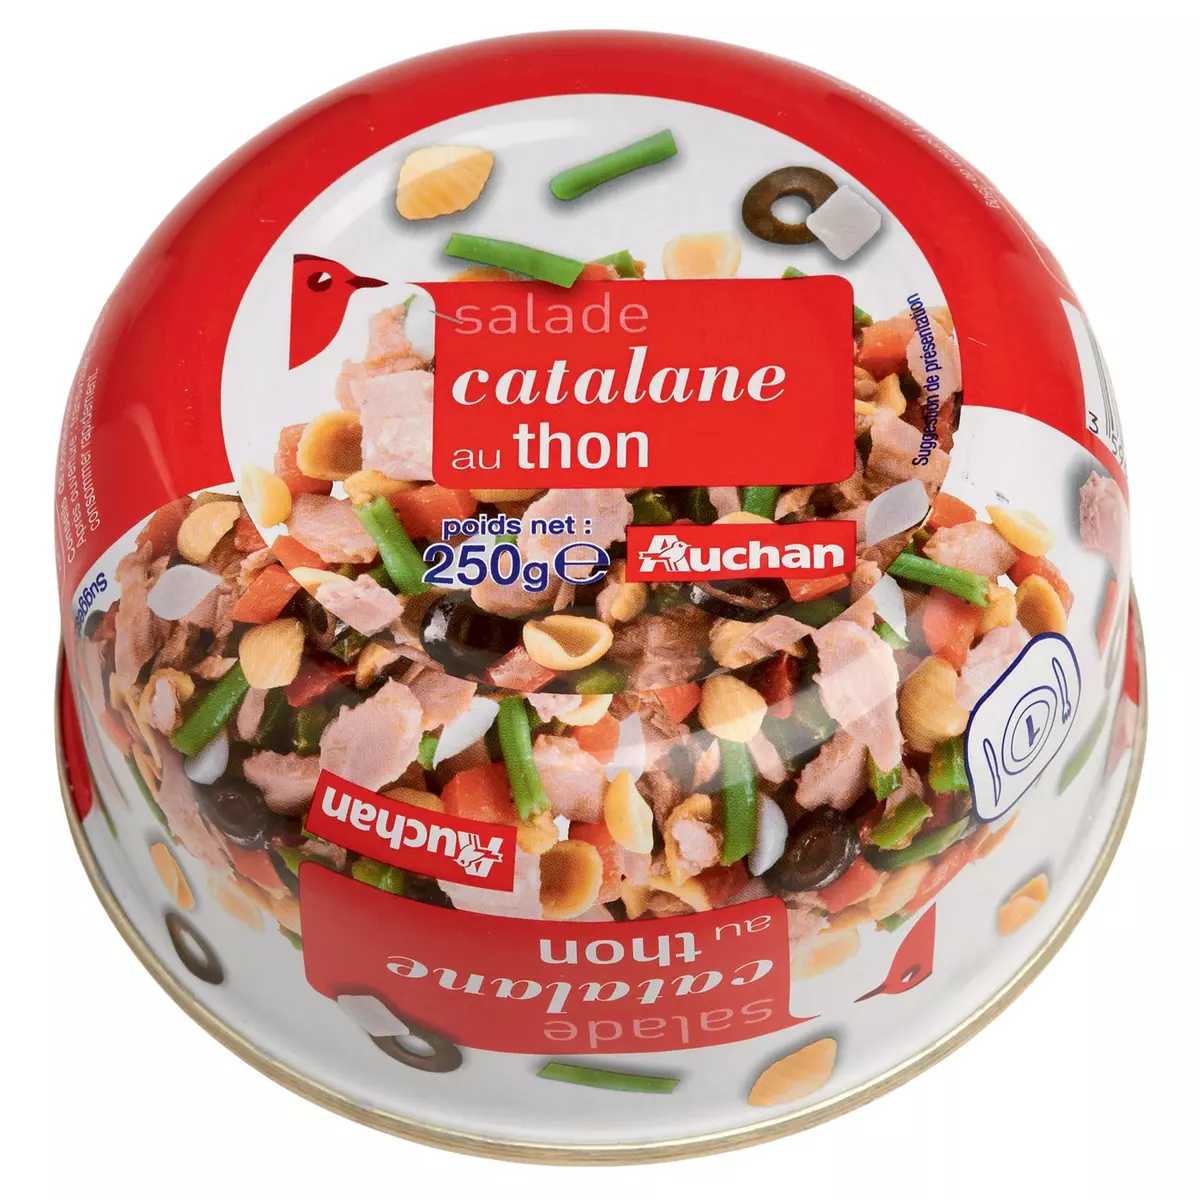 AUCHAN Salade catalane au thon 250g